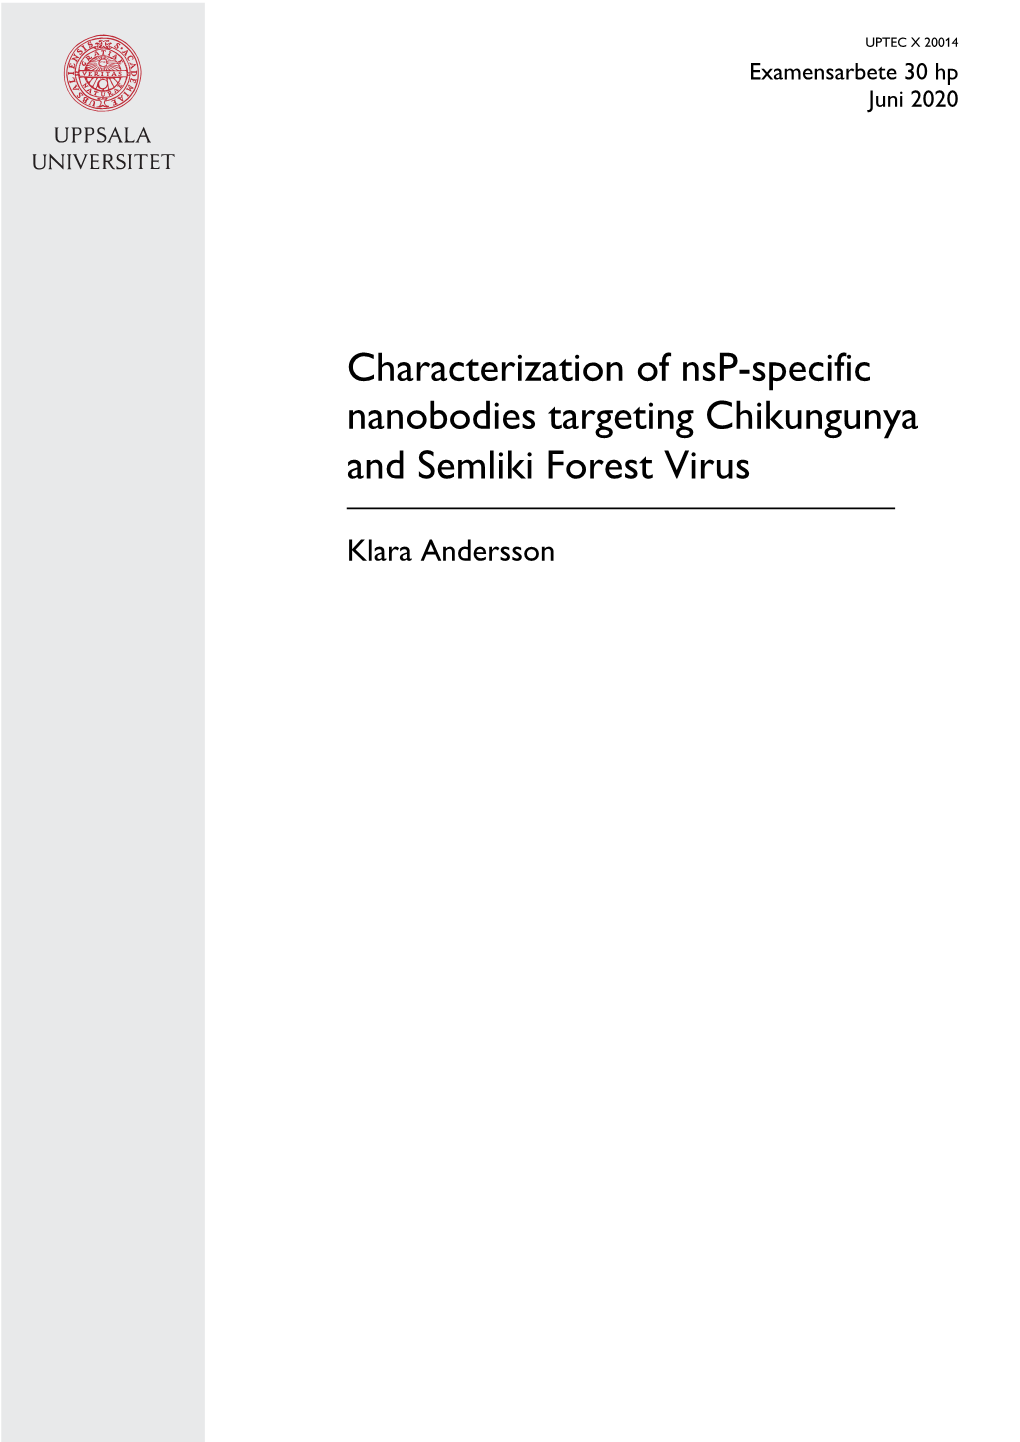 Characterization of Nsp-Specific Nanobodies Targeting Chikungunya and Semliki Forest Virus